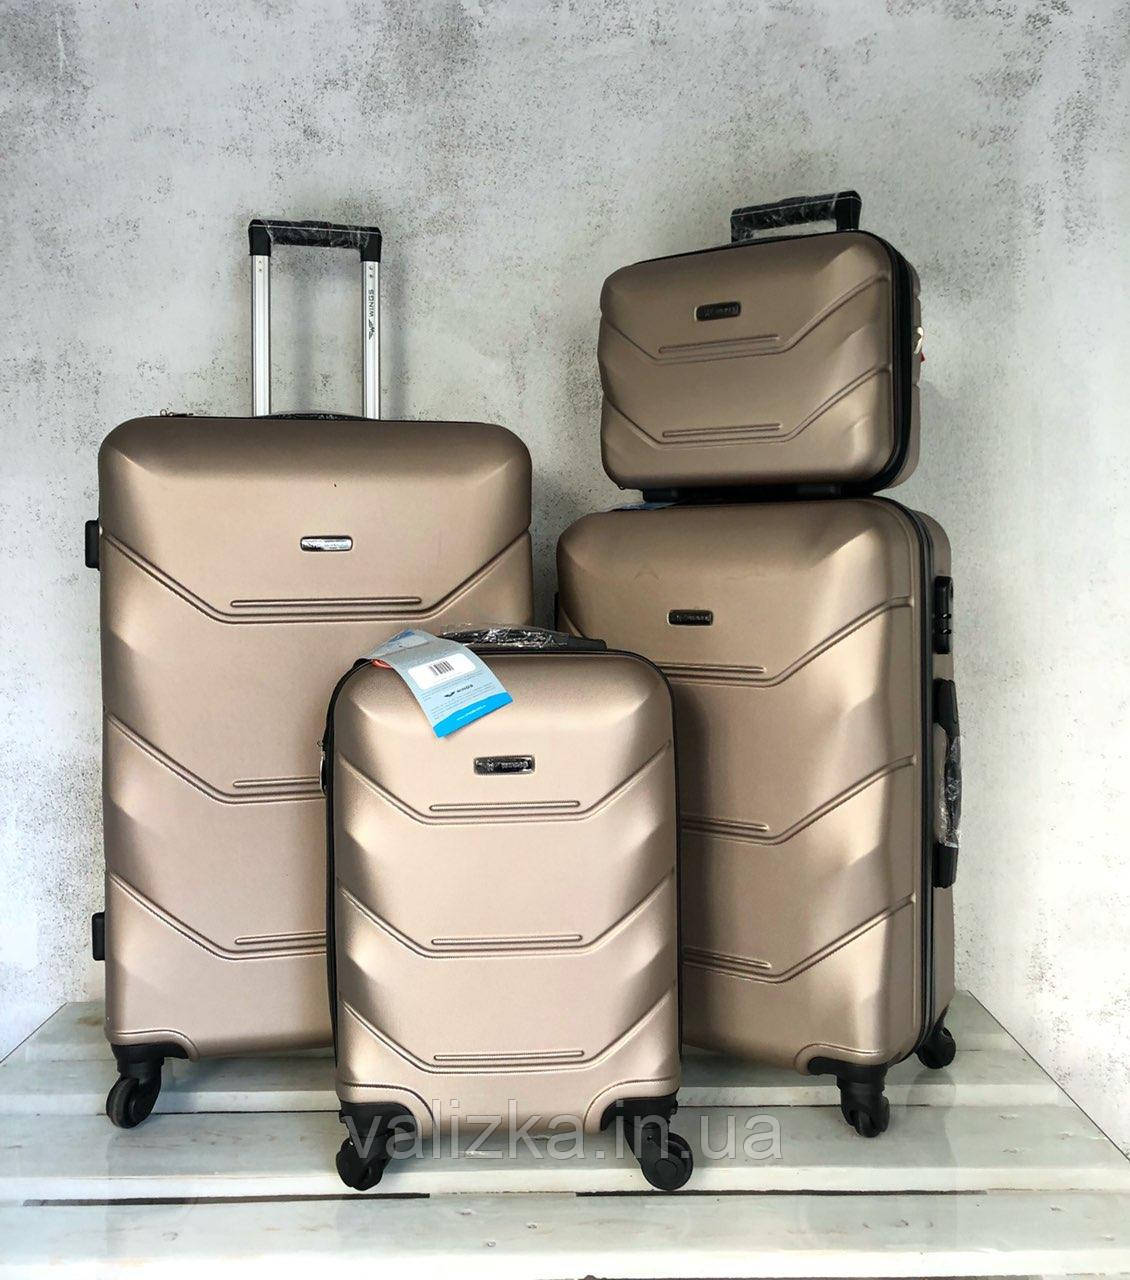 Комплект валіз з полікарбонату : малий , середній , великий . Комплект валіз із полікарбонату Польща